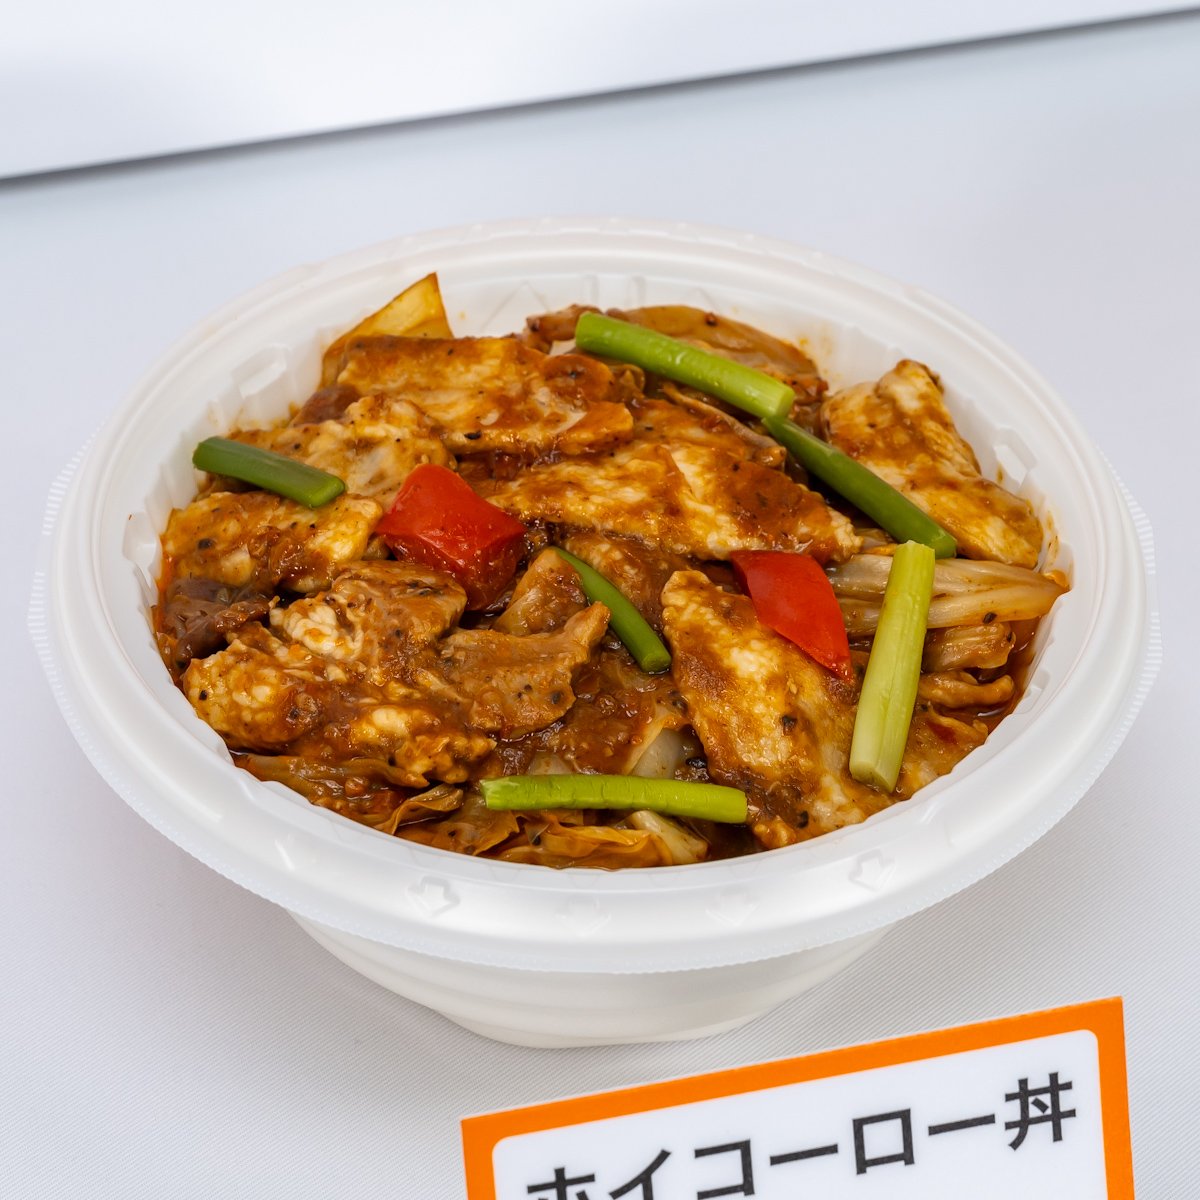 セブン-イレブン「お弁当リニューアル」ホイコーロー丼